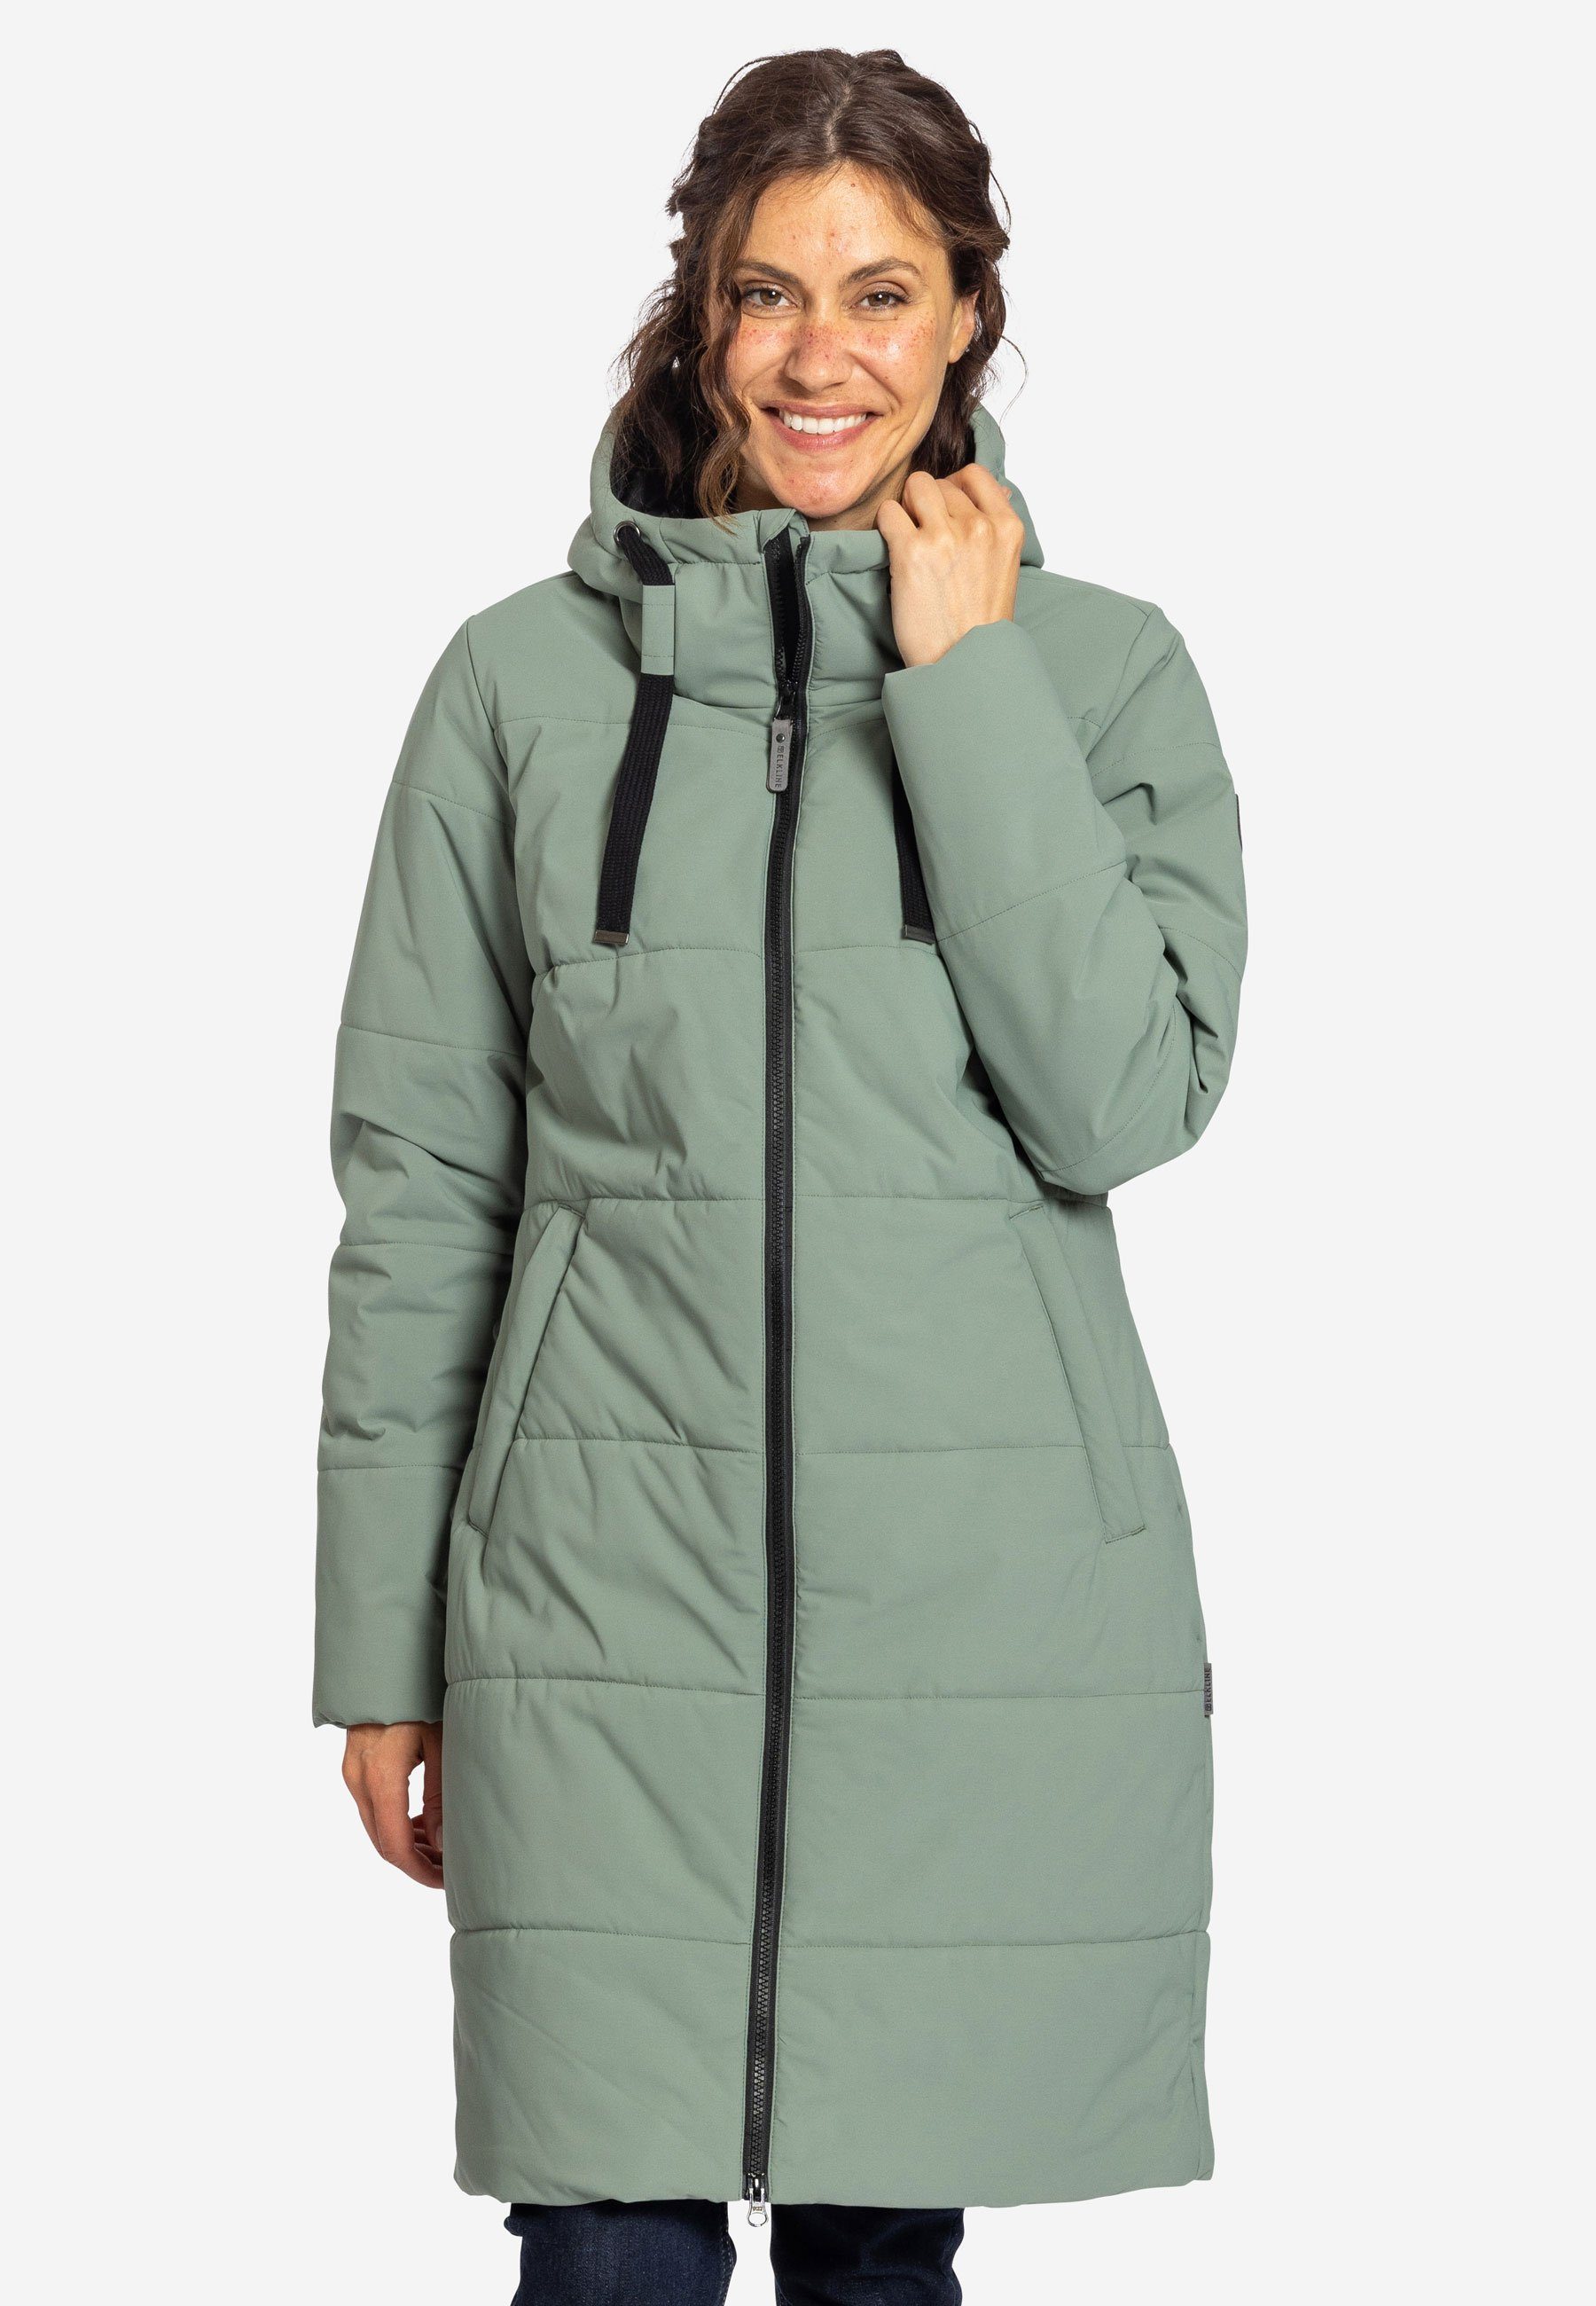 leichter 2-Wege-Reißverschluss soft Comfort Winterjacke langer Mantel, Elkline olive